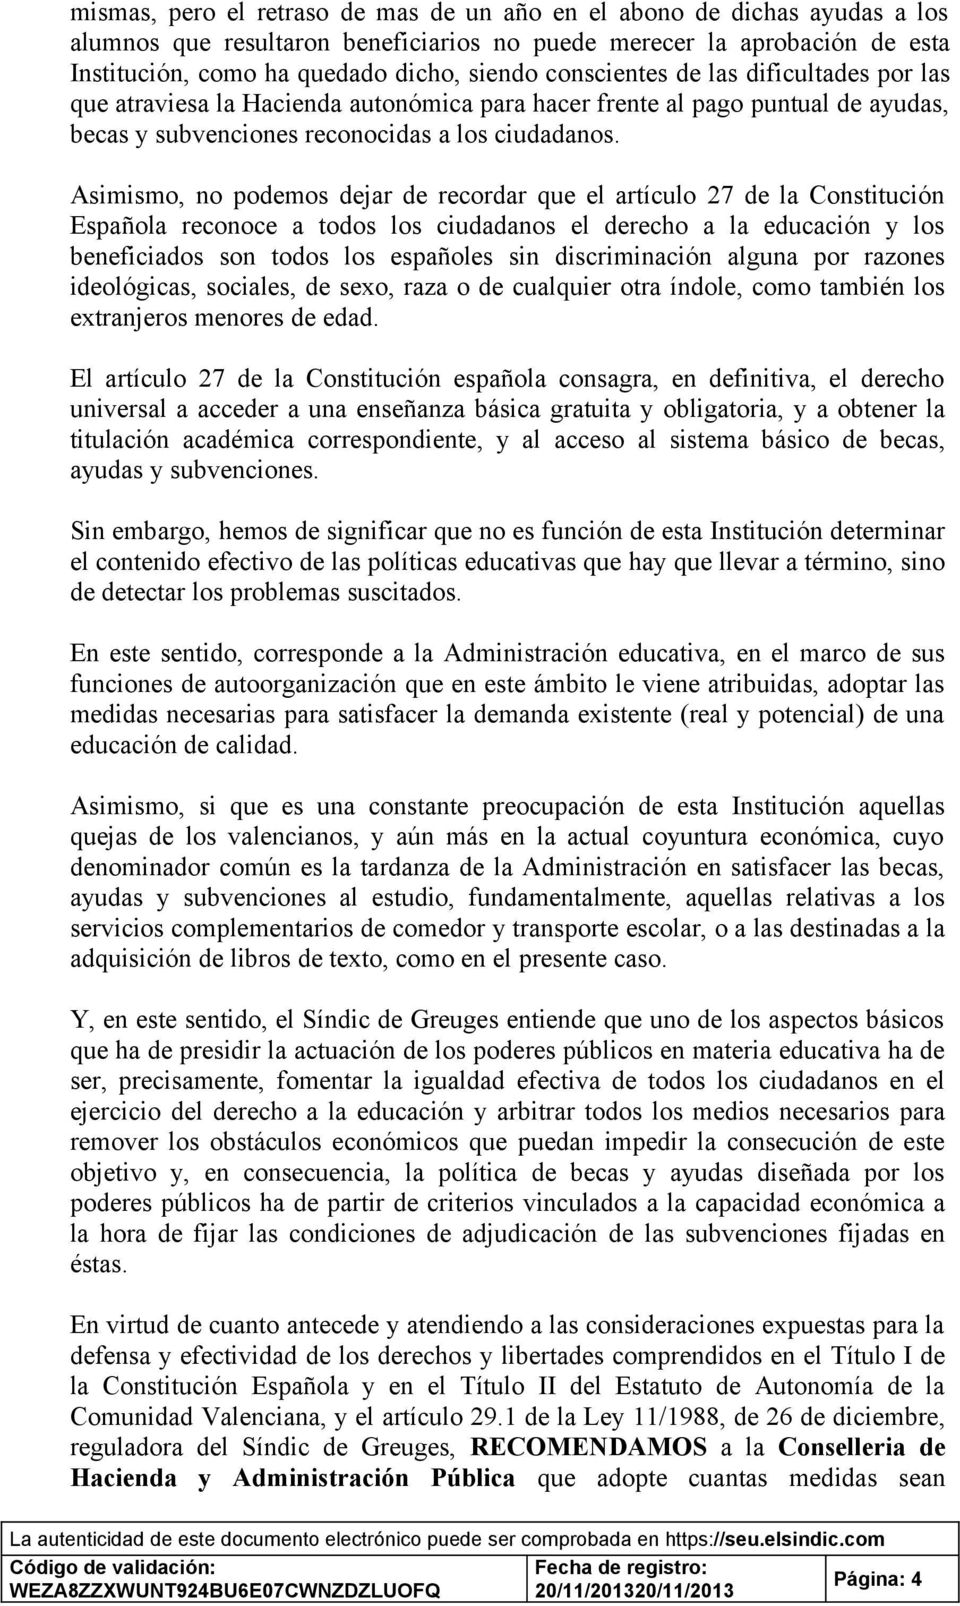 Asimismo, no podemos dejar de recordar que el artículo 27 de la Constitución Española reconoce a todos los ciudadanos el derecho a la educación y los beneficiados son todos los españoles sin